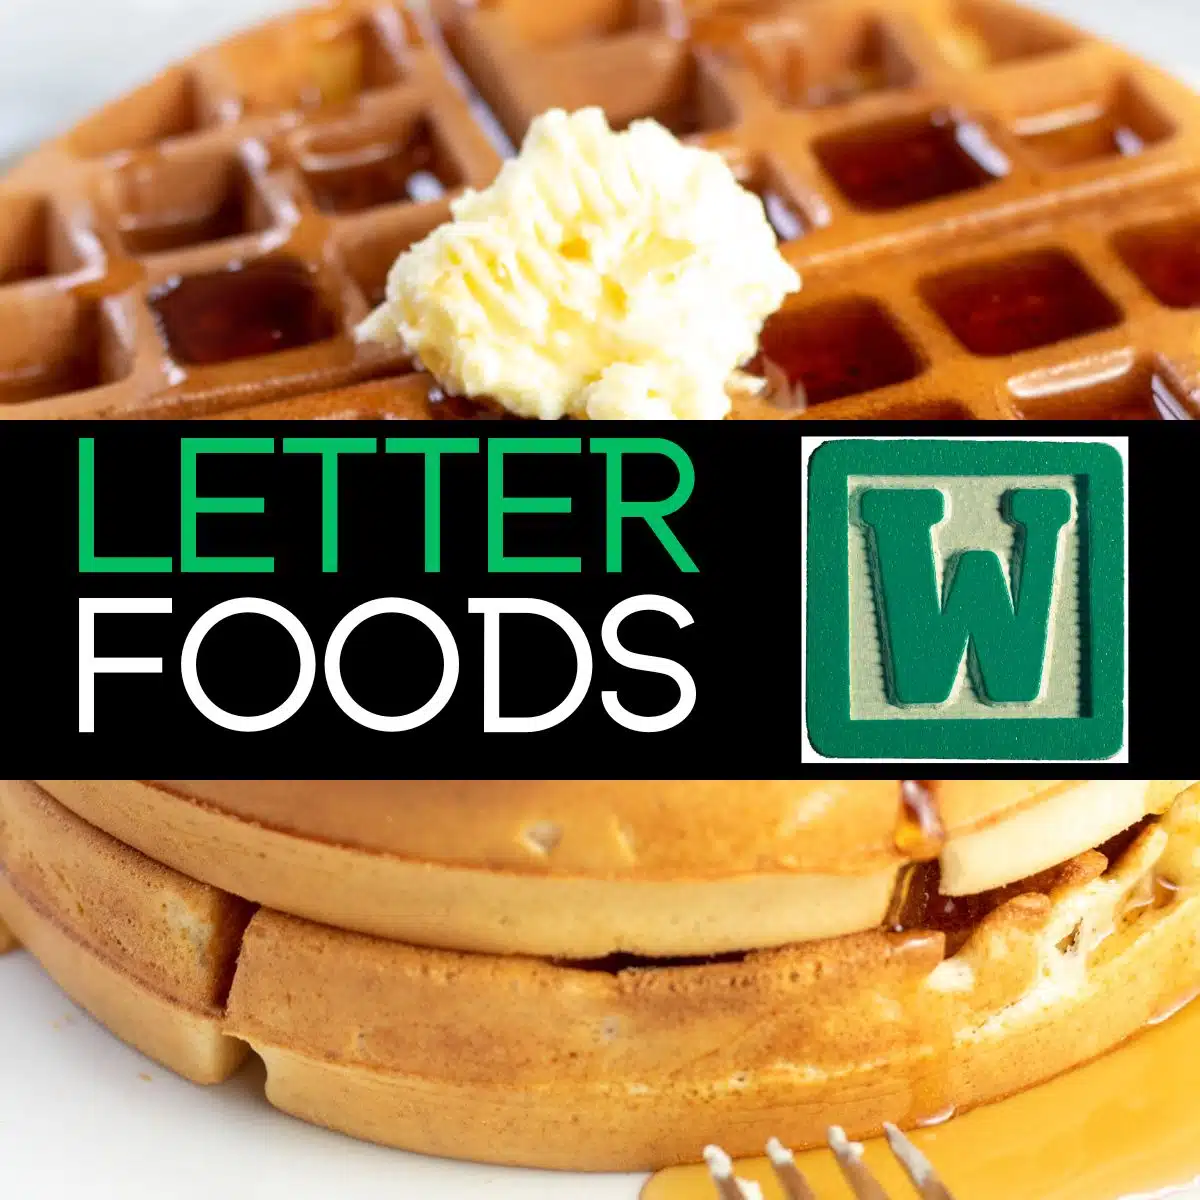 Immagine quadrata con testo per alimenti che iniziano con la lettera w, con waffle nella foto.